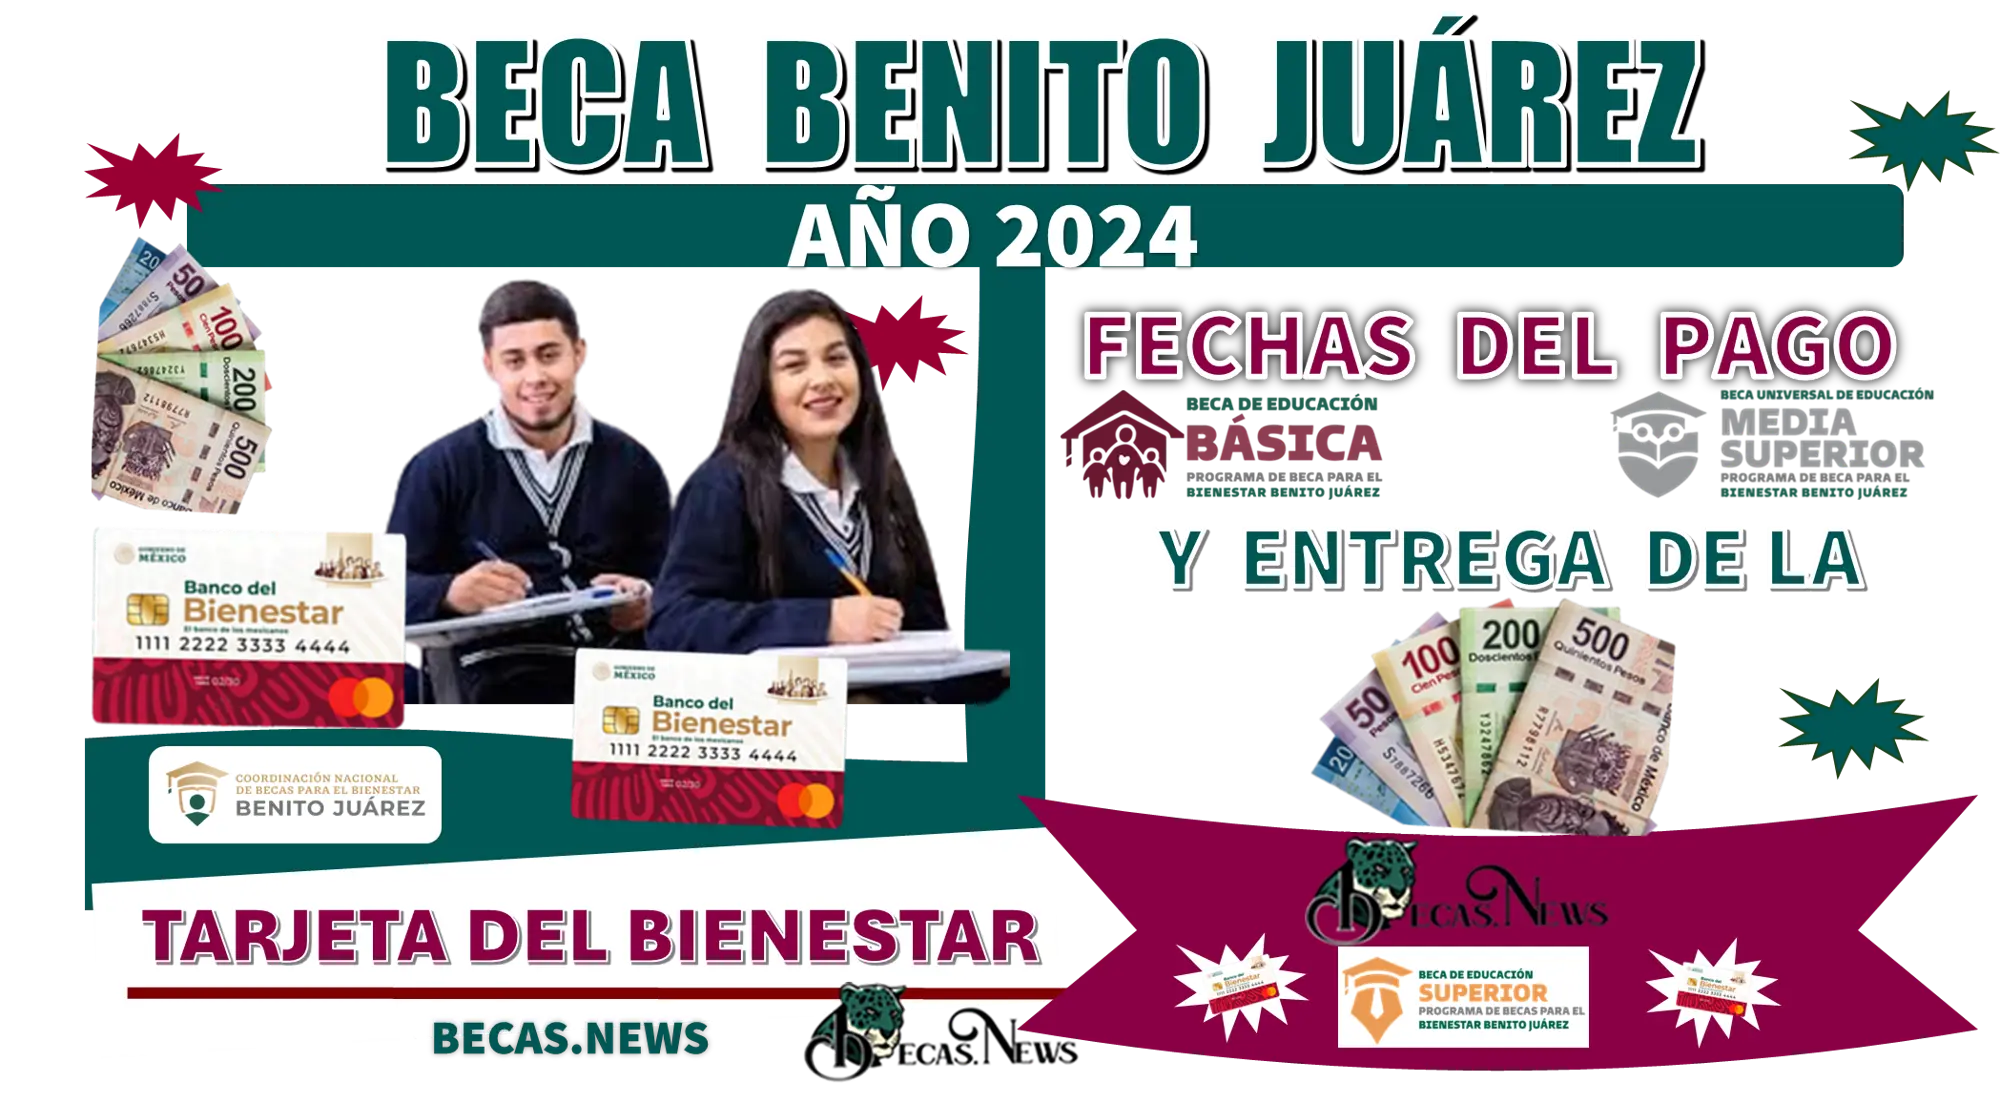 Beca Benito Juárez de este año 2024: Fechas del pago y entrega de la Tarjeta del Banco del Bienestar